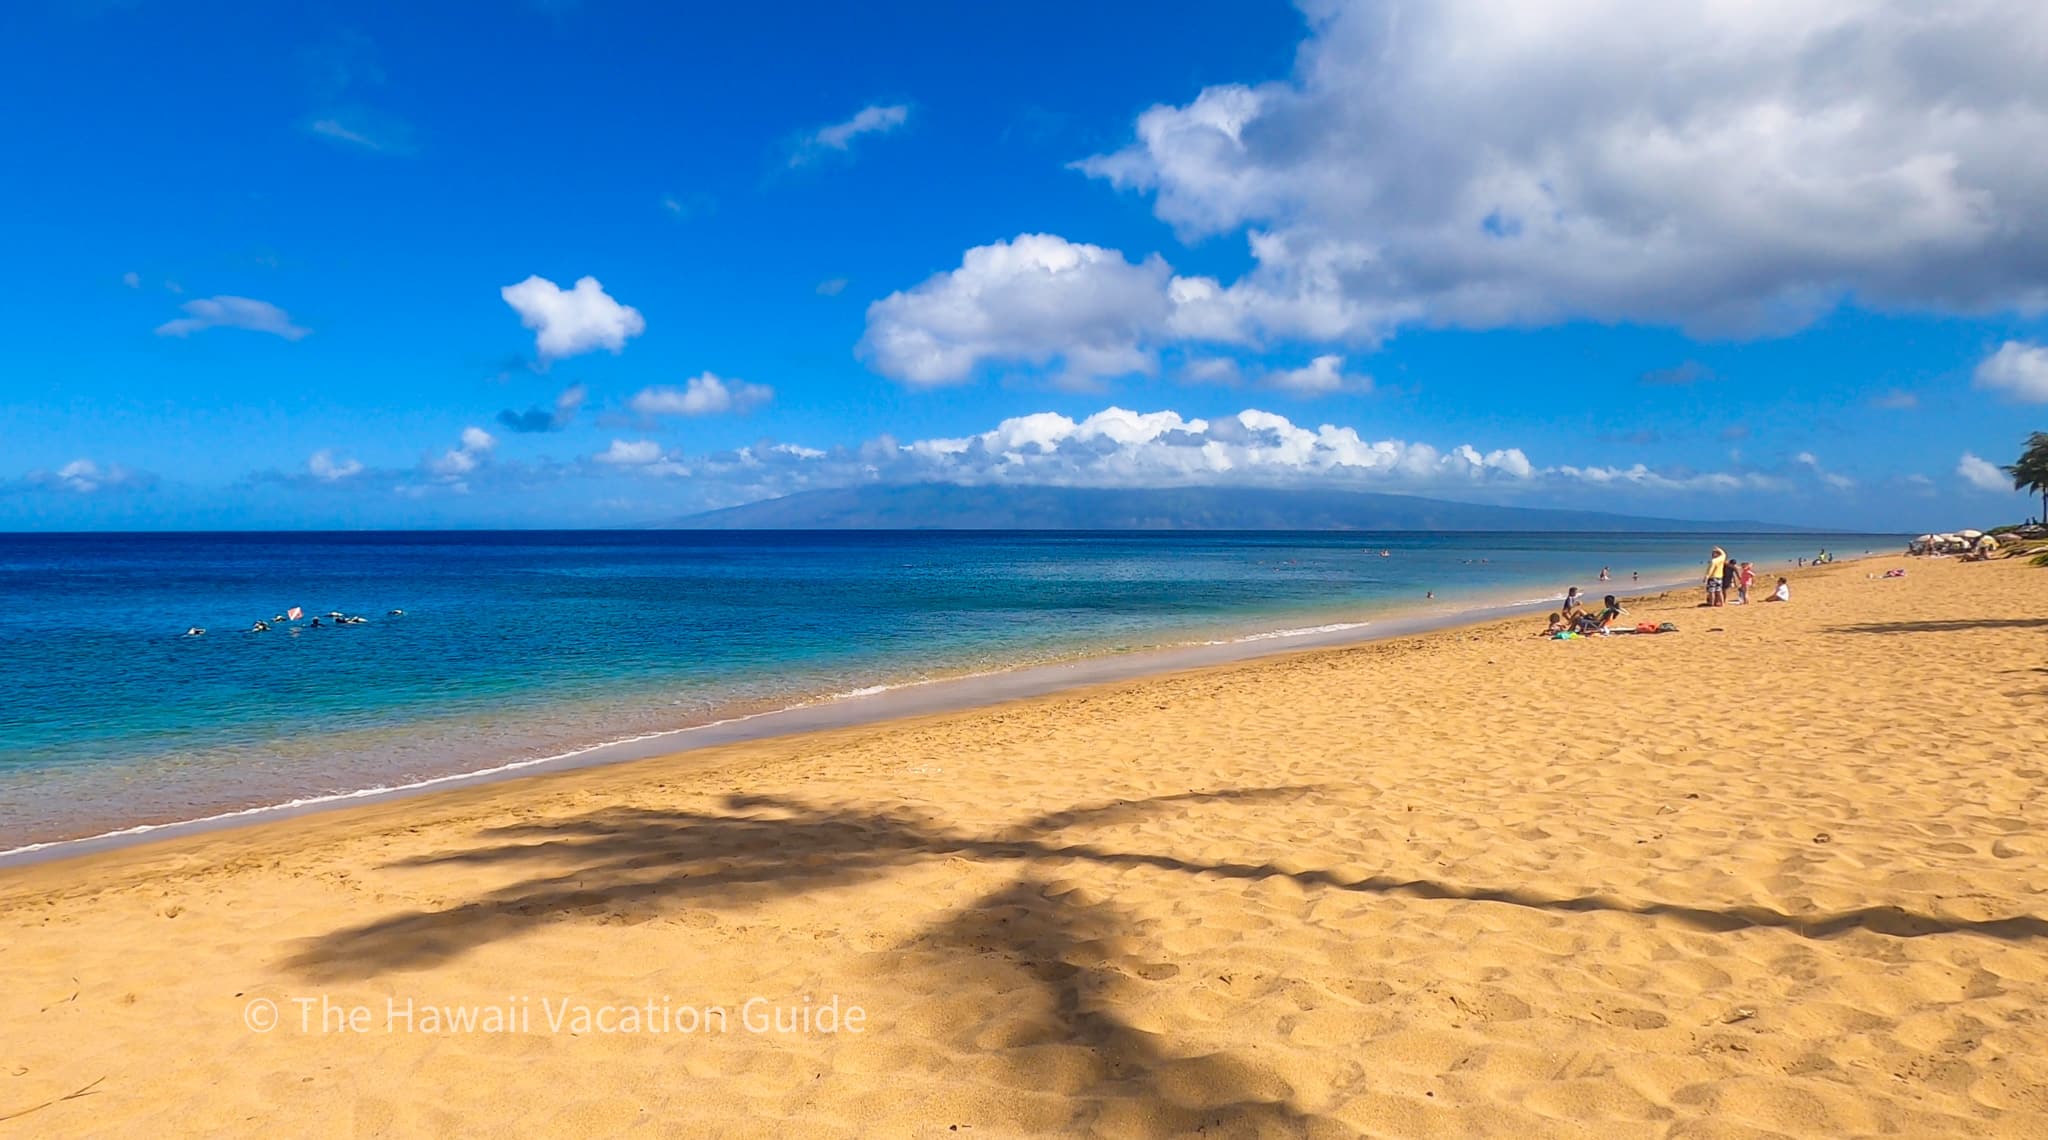 airport beach maui hawaii guide